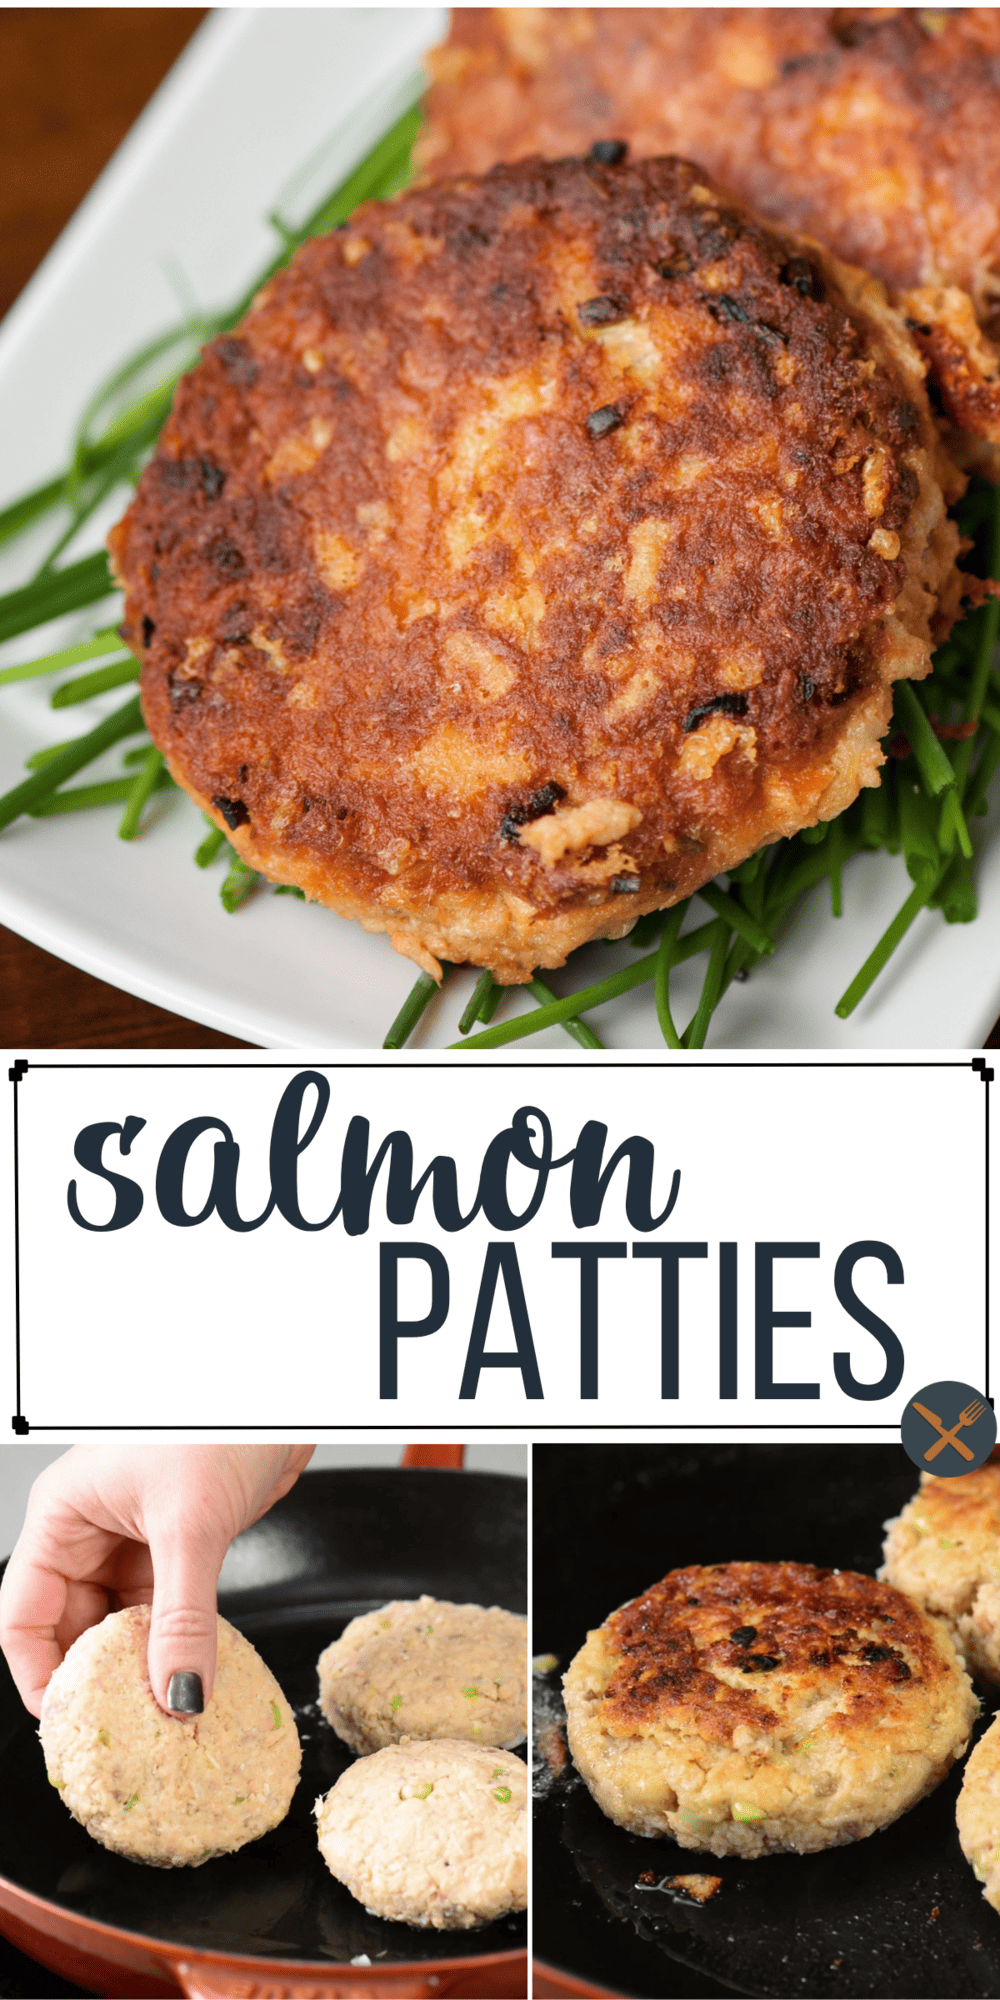 Salmon Patties